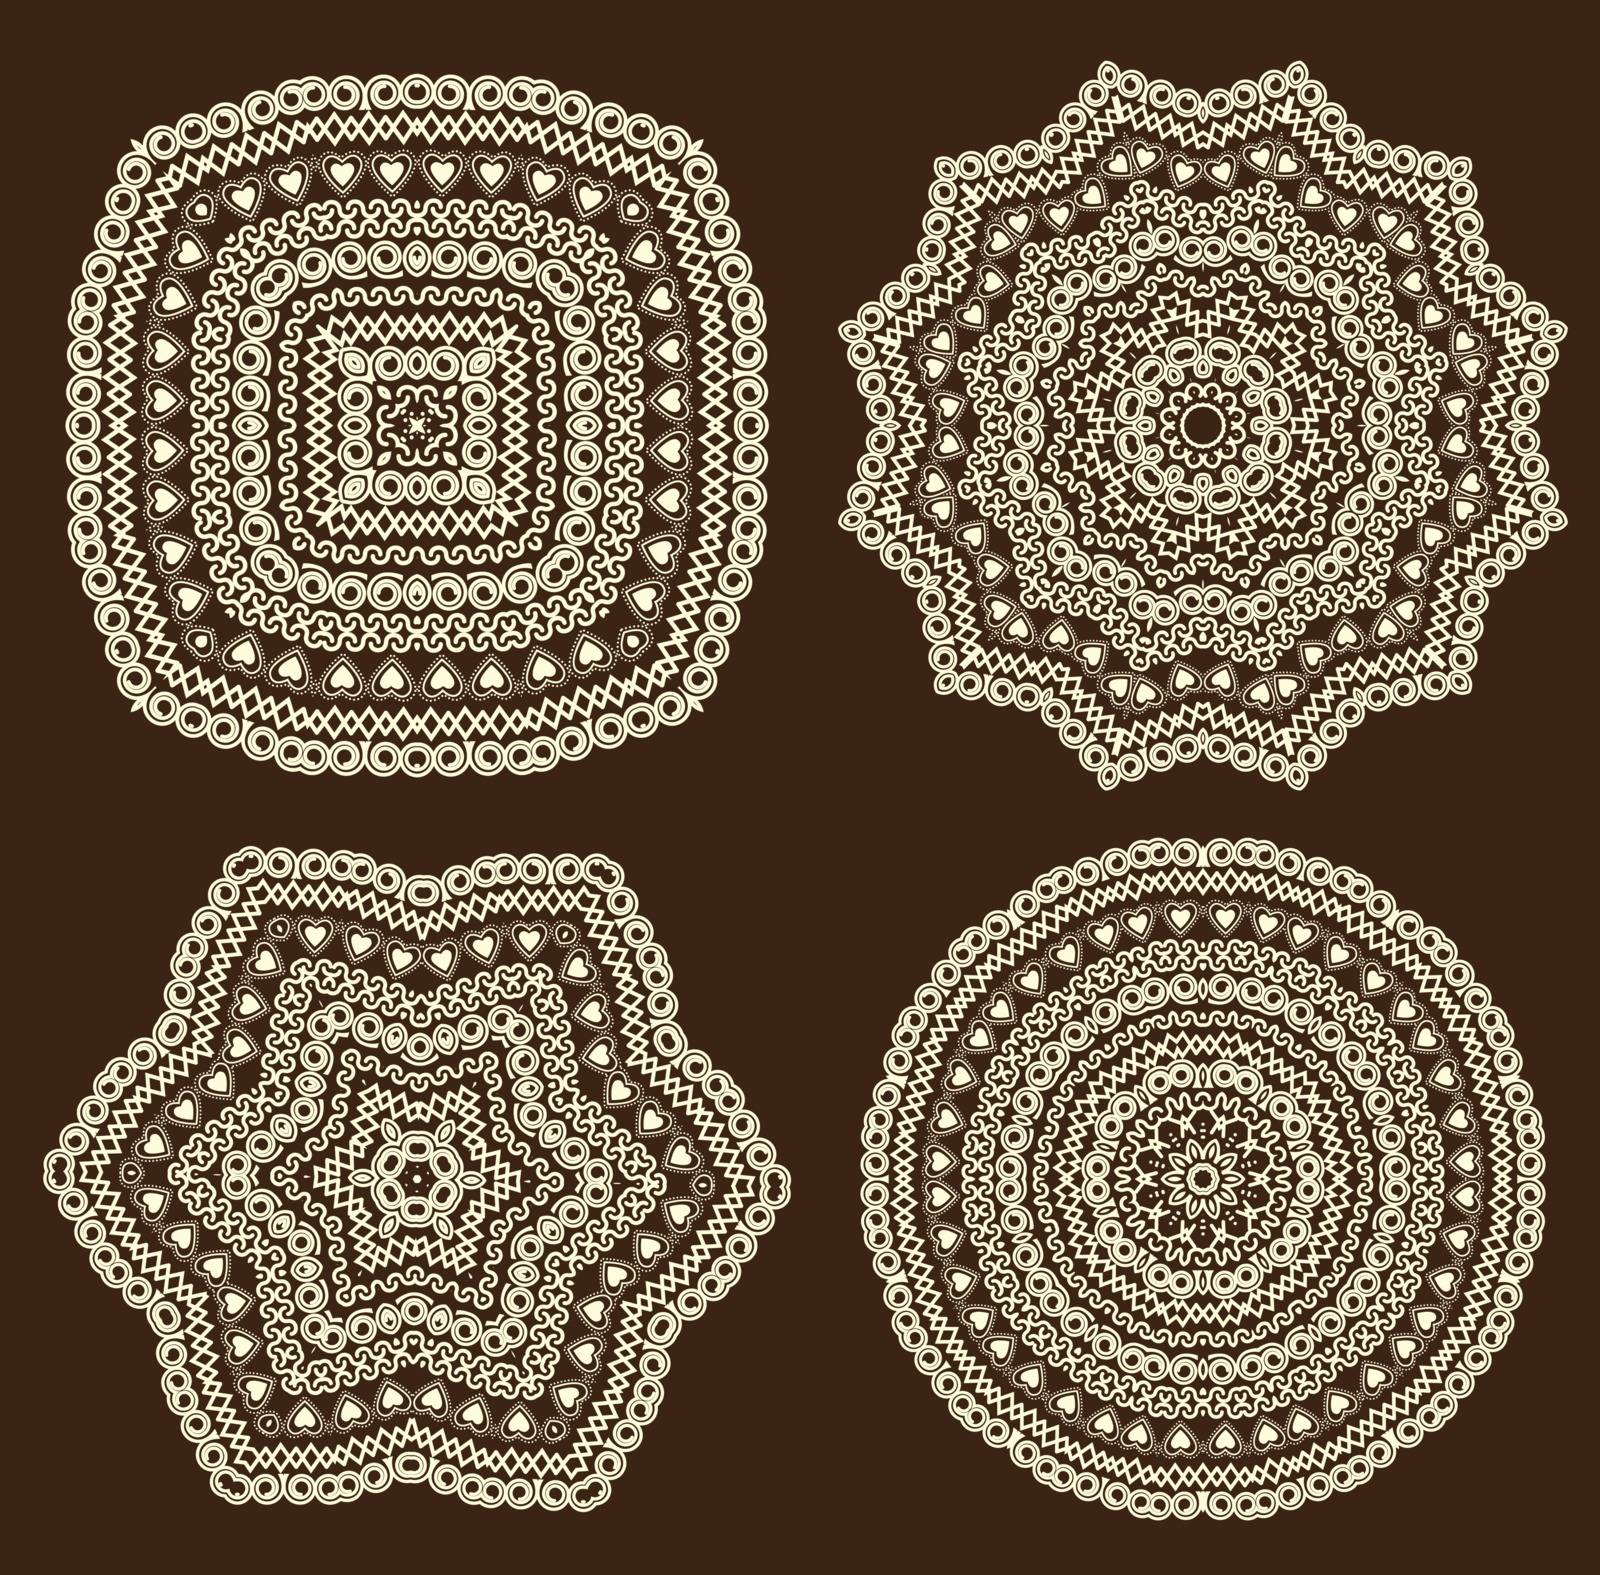 Pattern by odina222